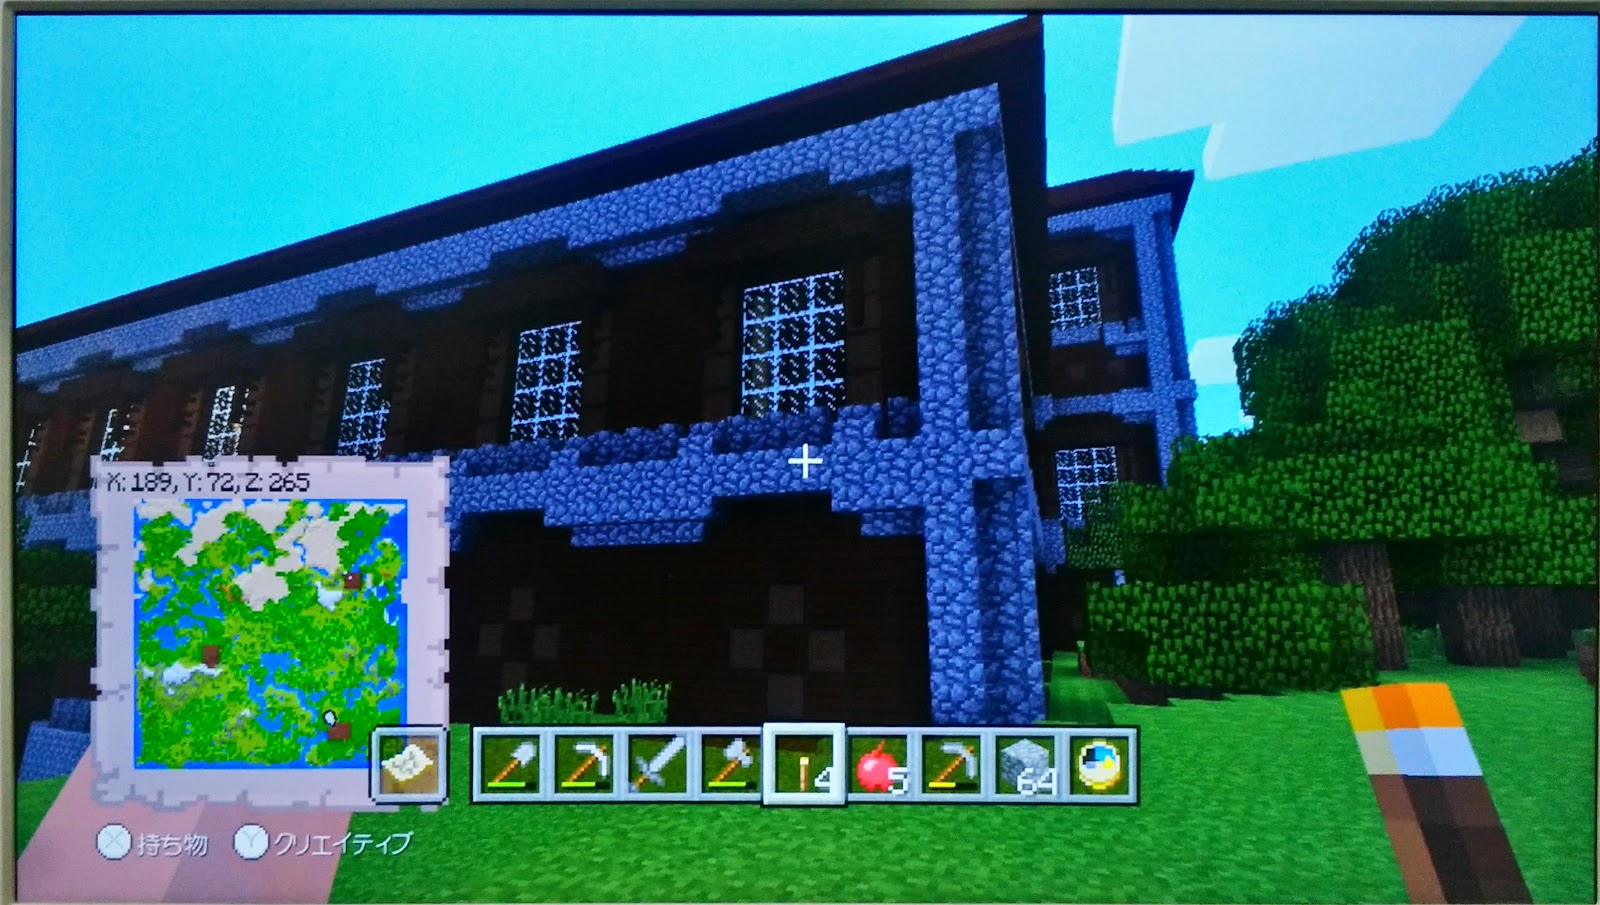 ぬこのおなかの備忘録 Minecraft Wii U Edition Seed 村4つ 森 の洋館3つ ピラミッド3つ 魔女の家2つ 廃坑ほかの準神マップ ネタバレ注意